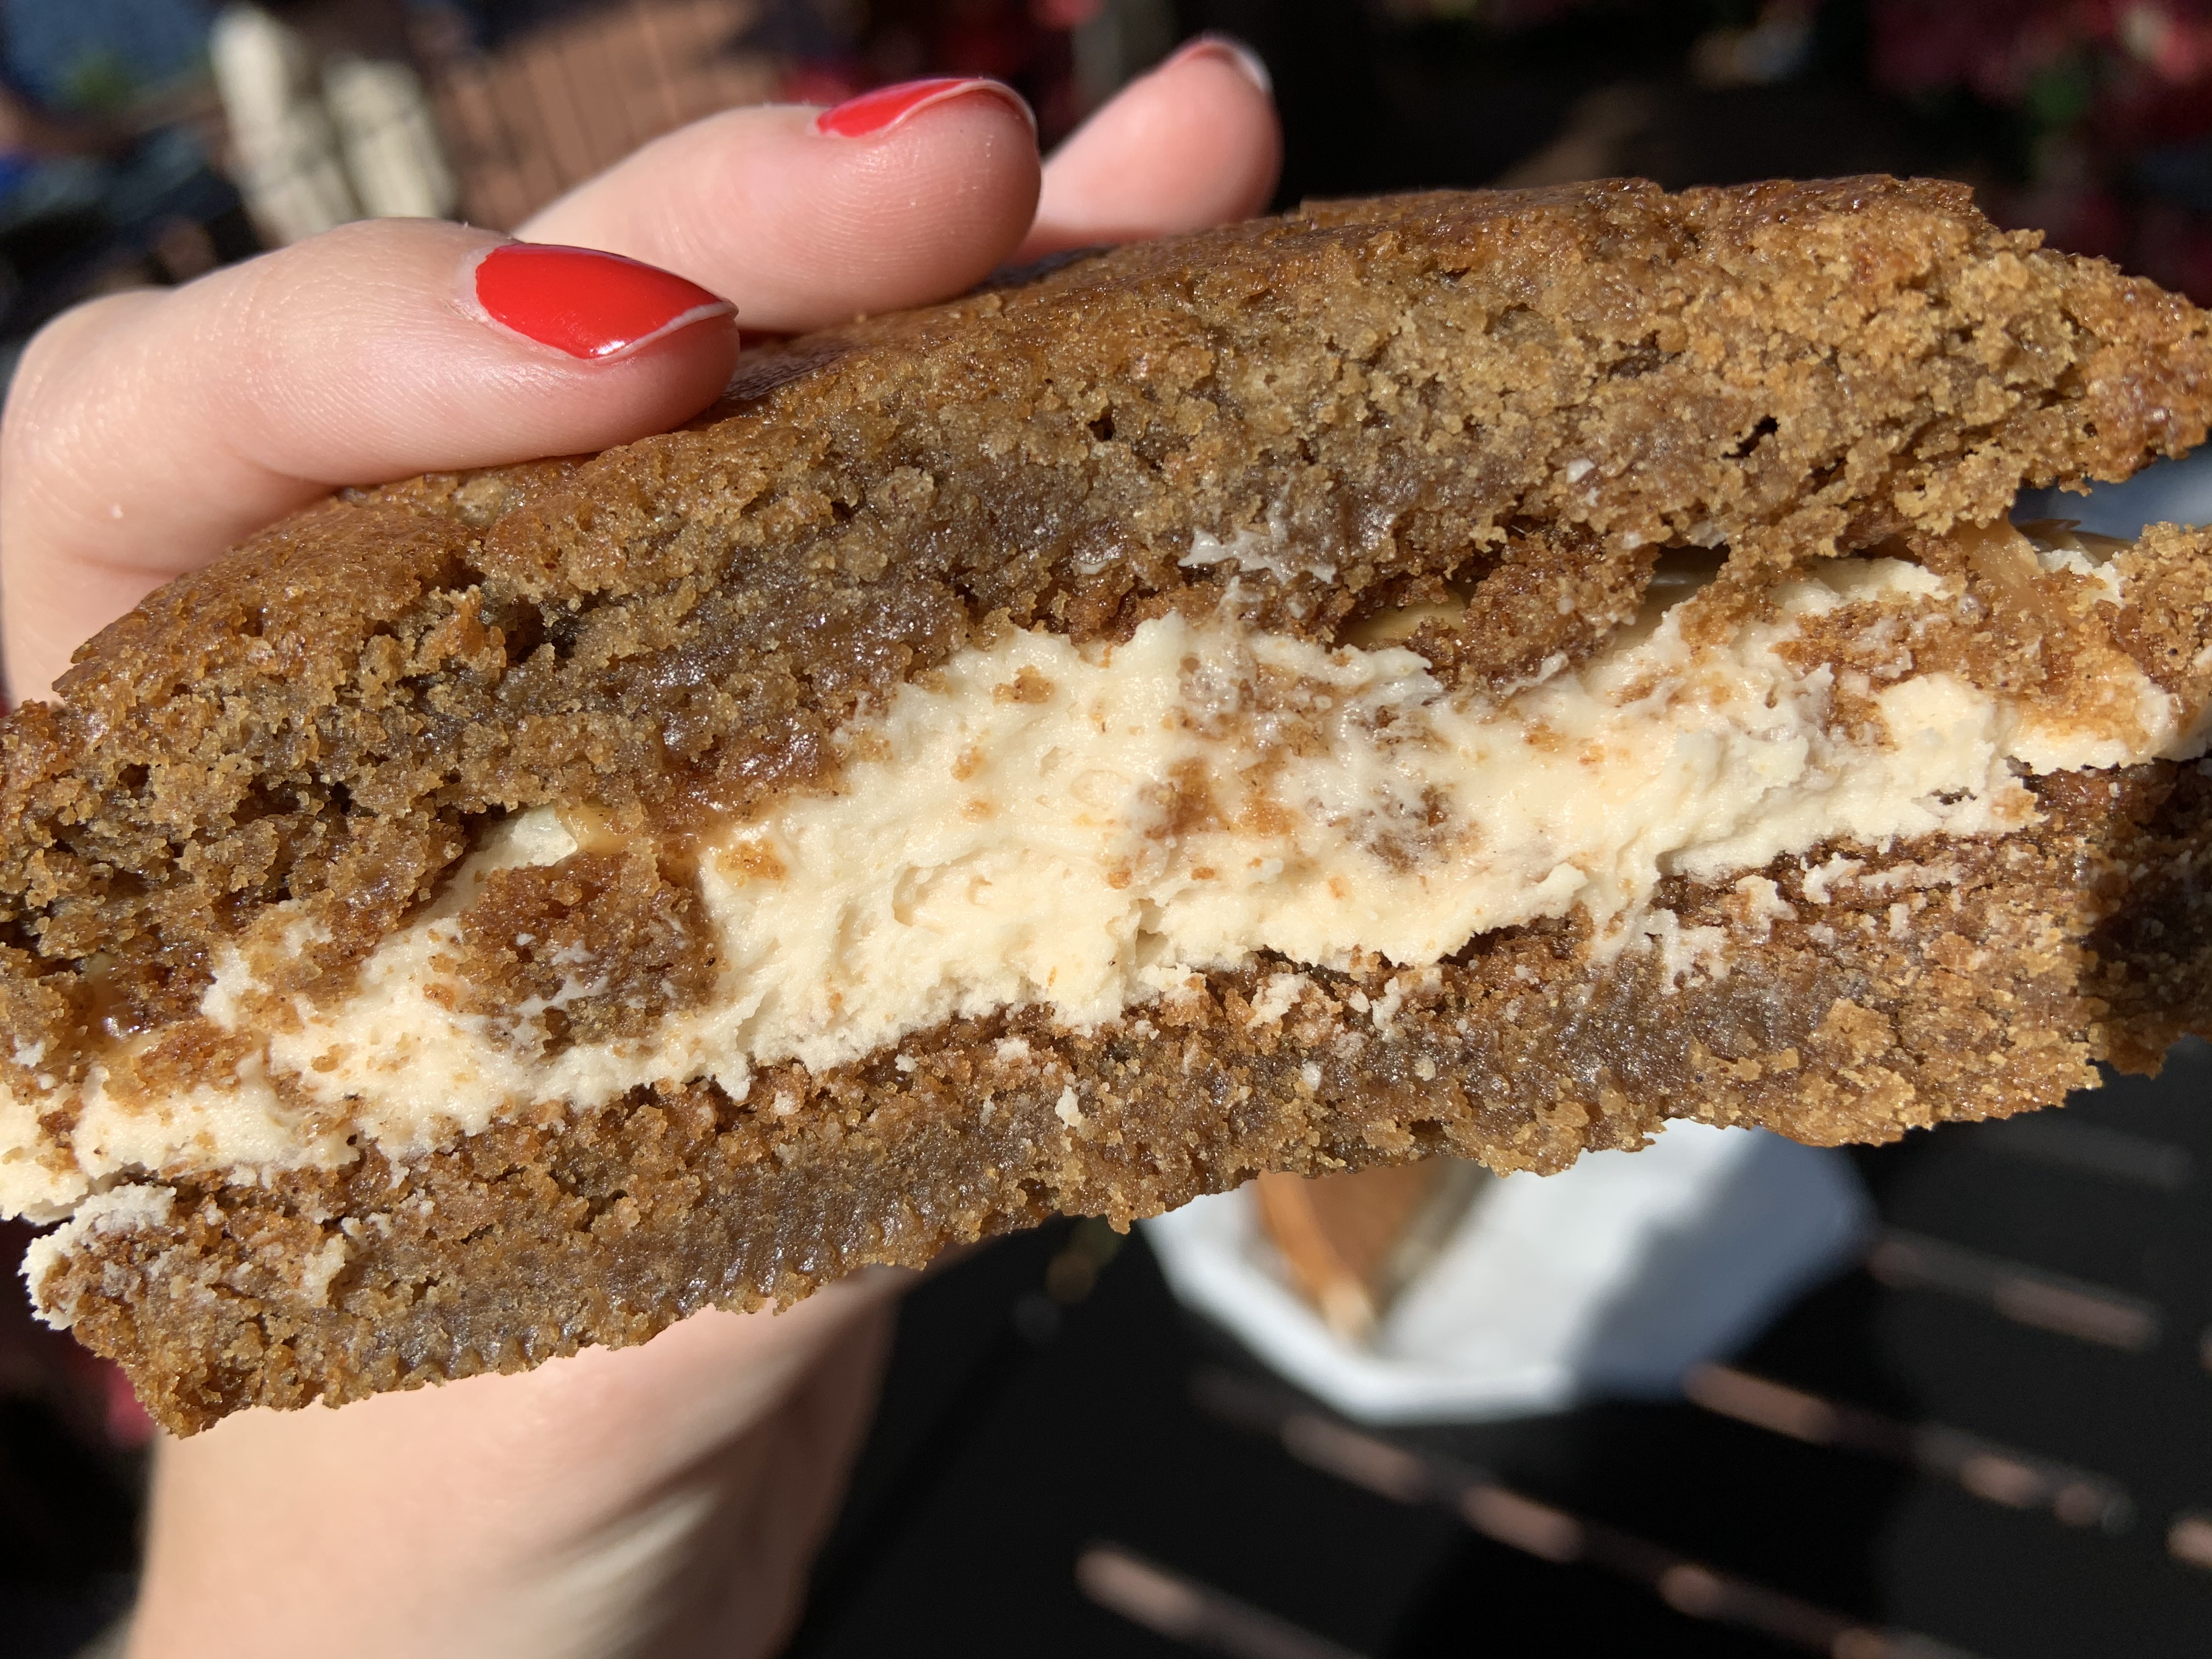 Gingerbread Cookie Sandwich Karamell Kuche 12/3/19 15